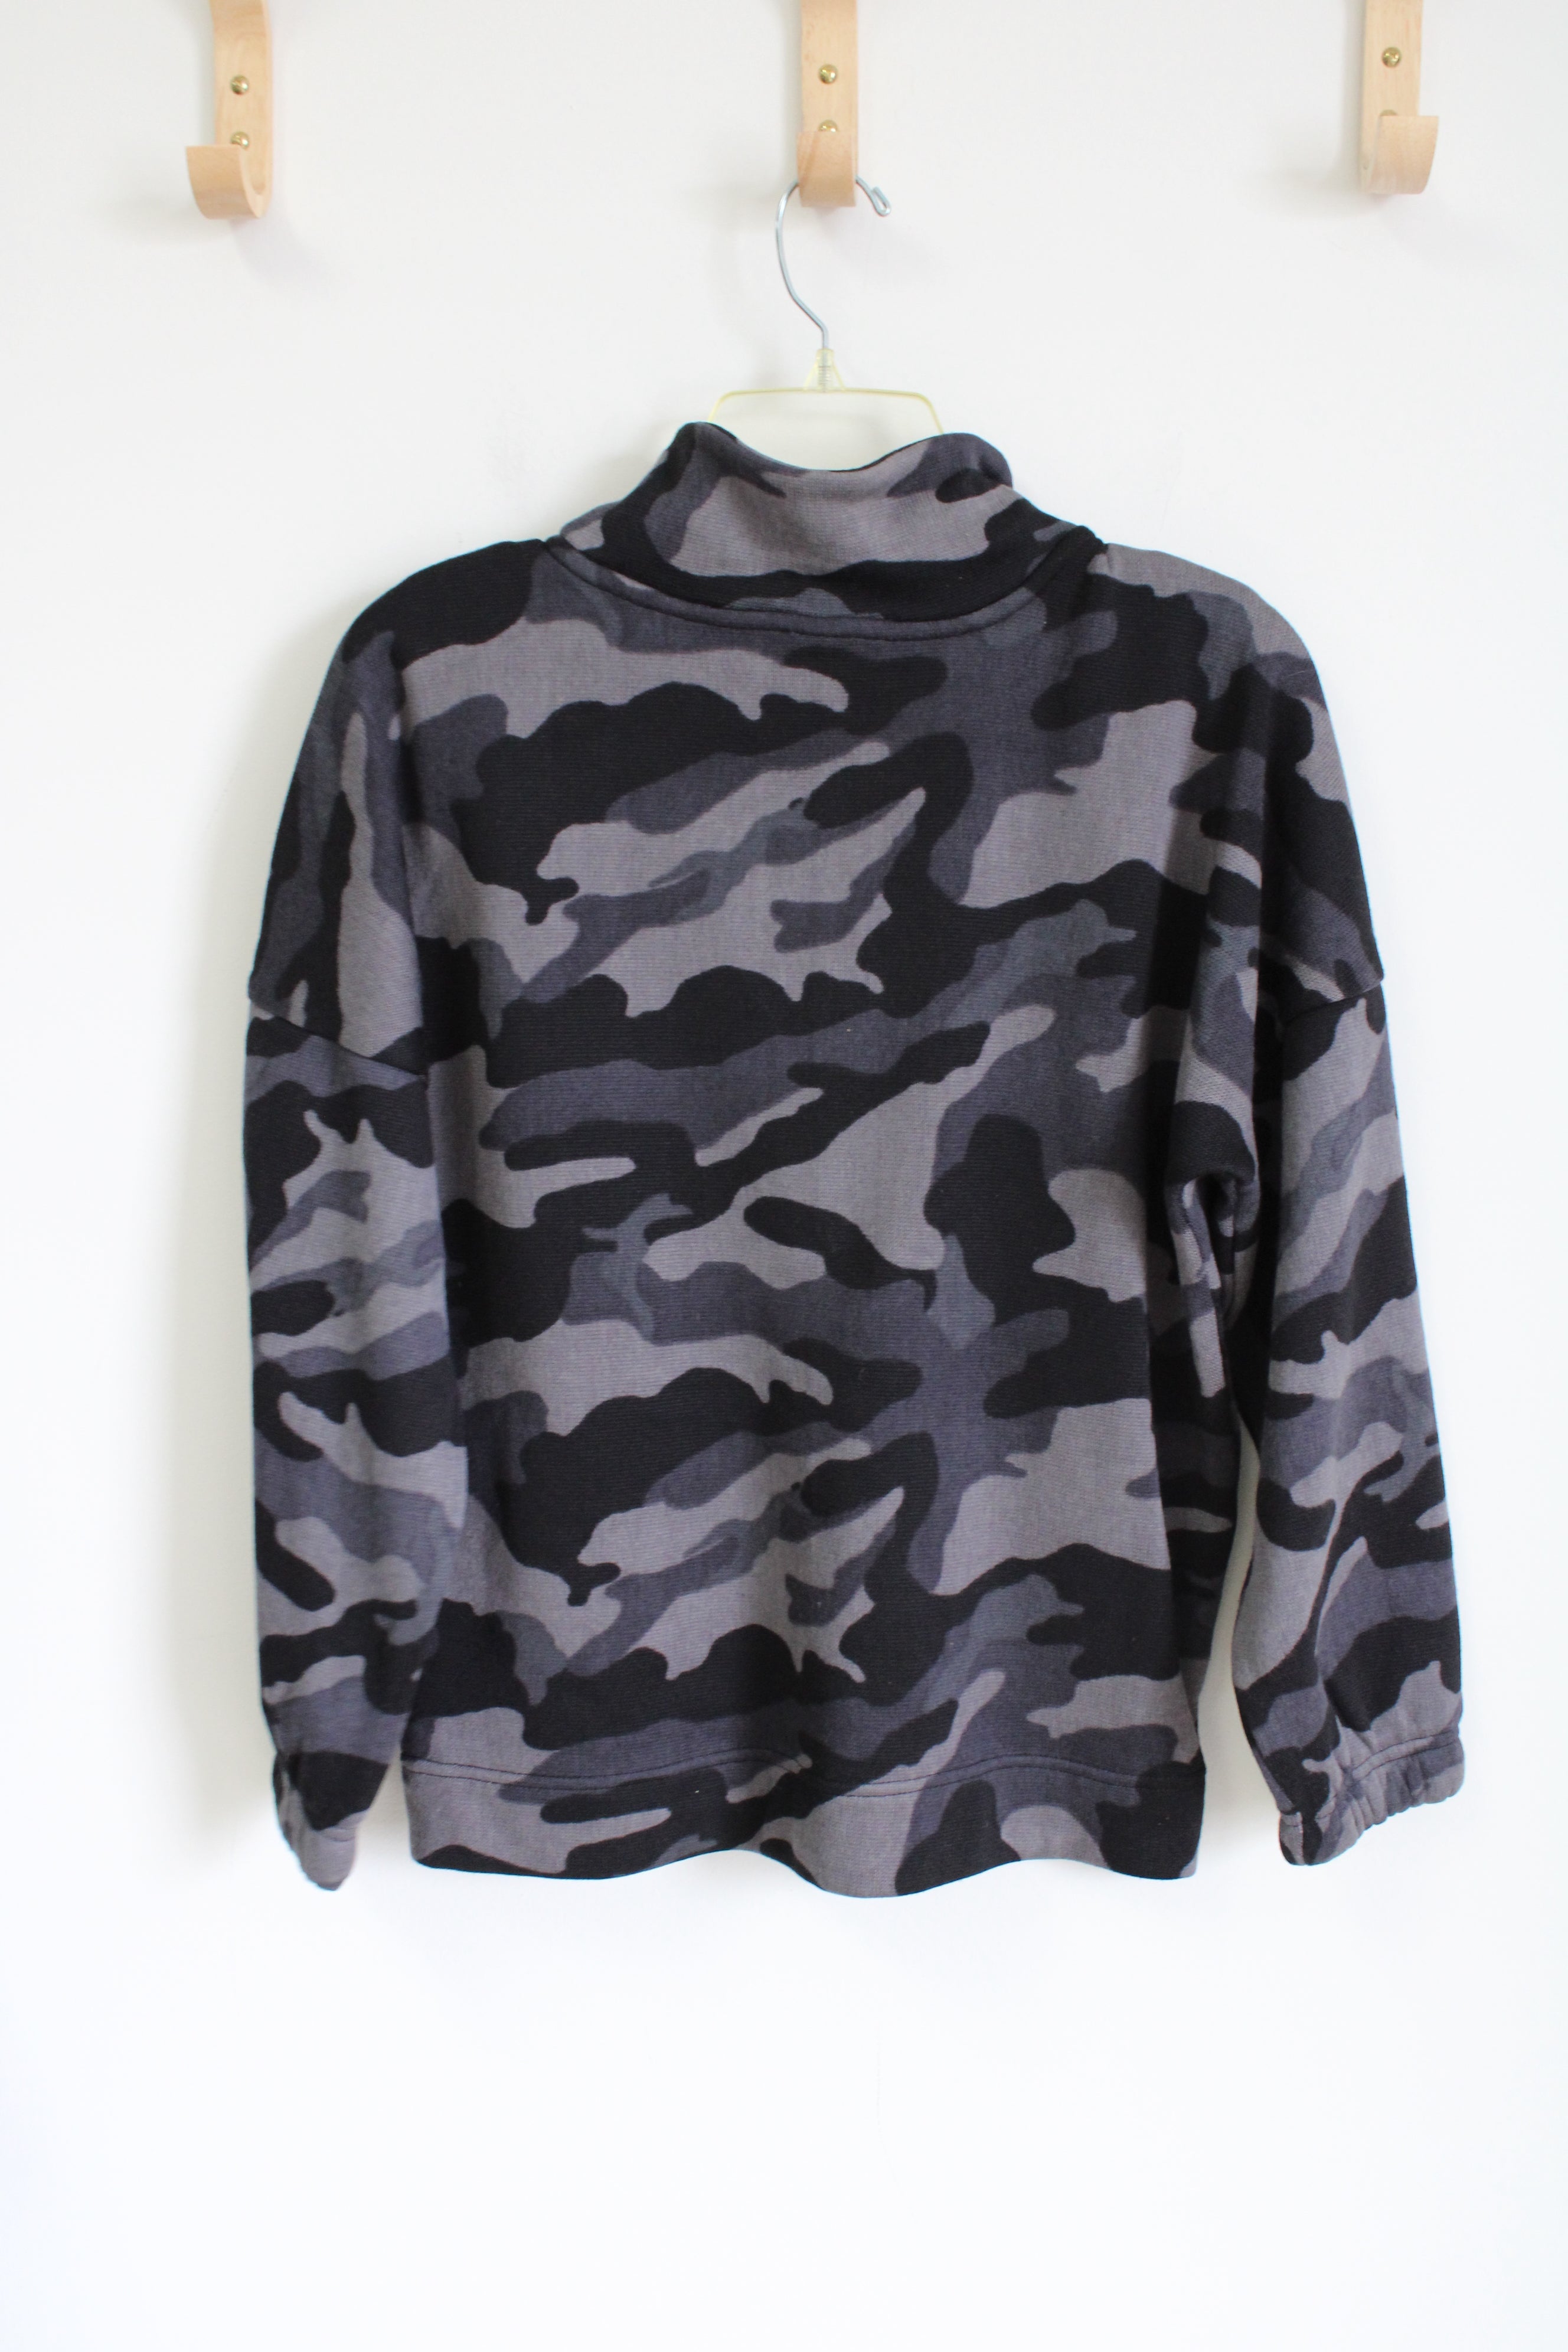 Old Navy Gray Black Camo 1/4 Zip Fleece Lined Sweatshirt | 14/16